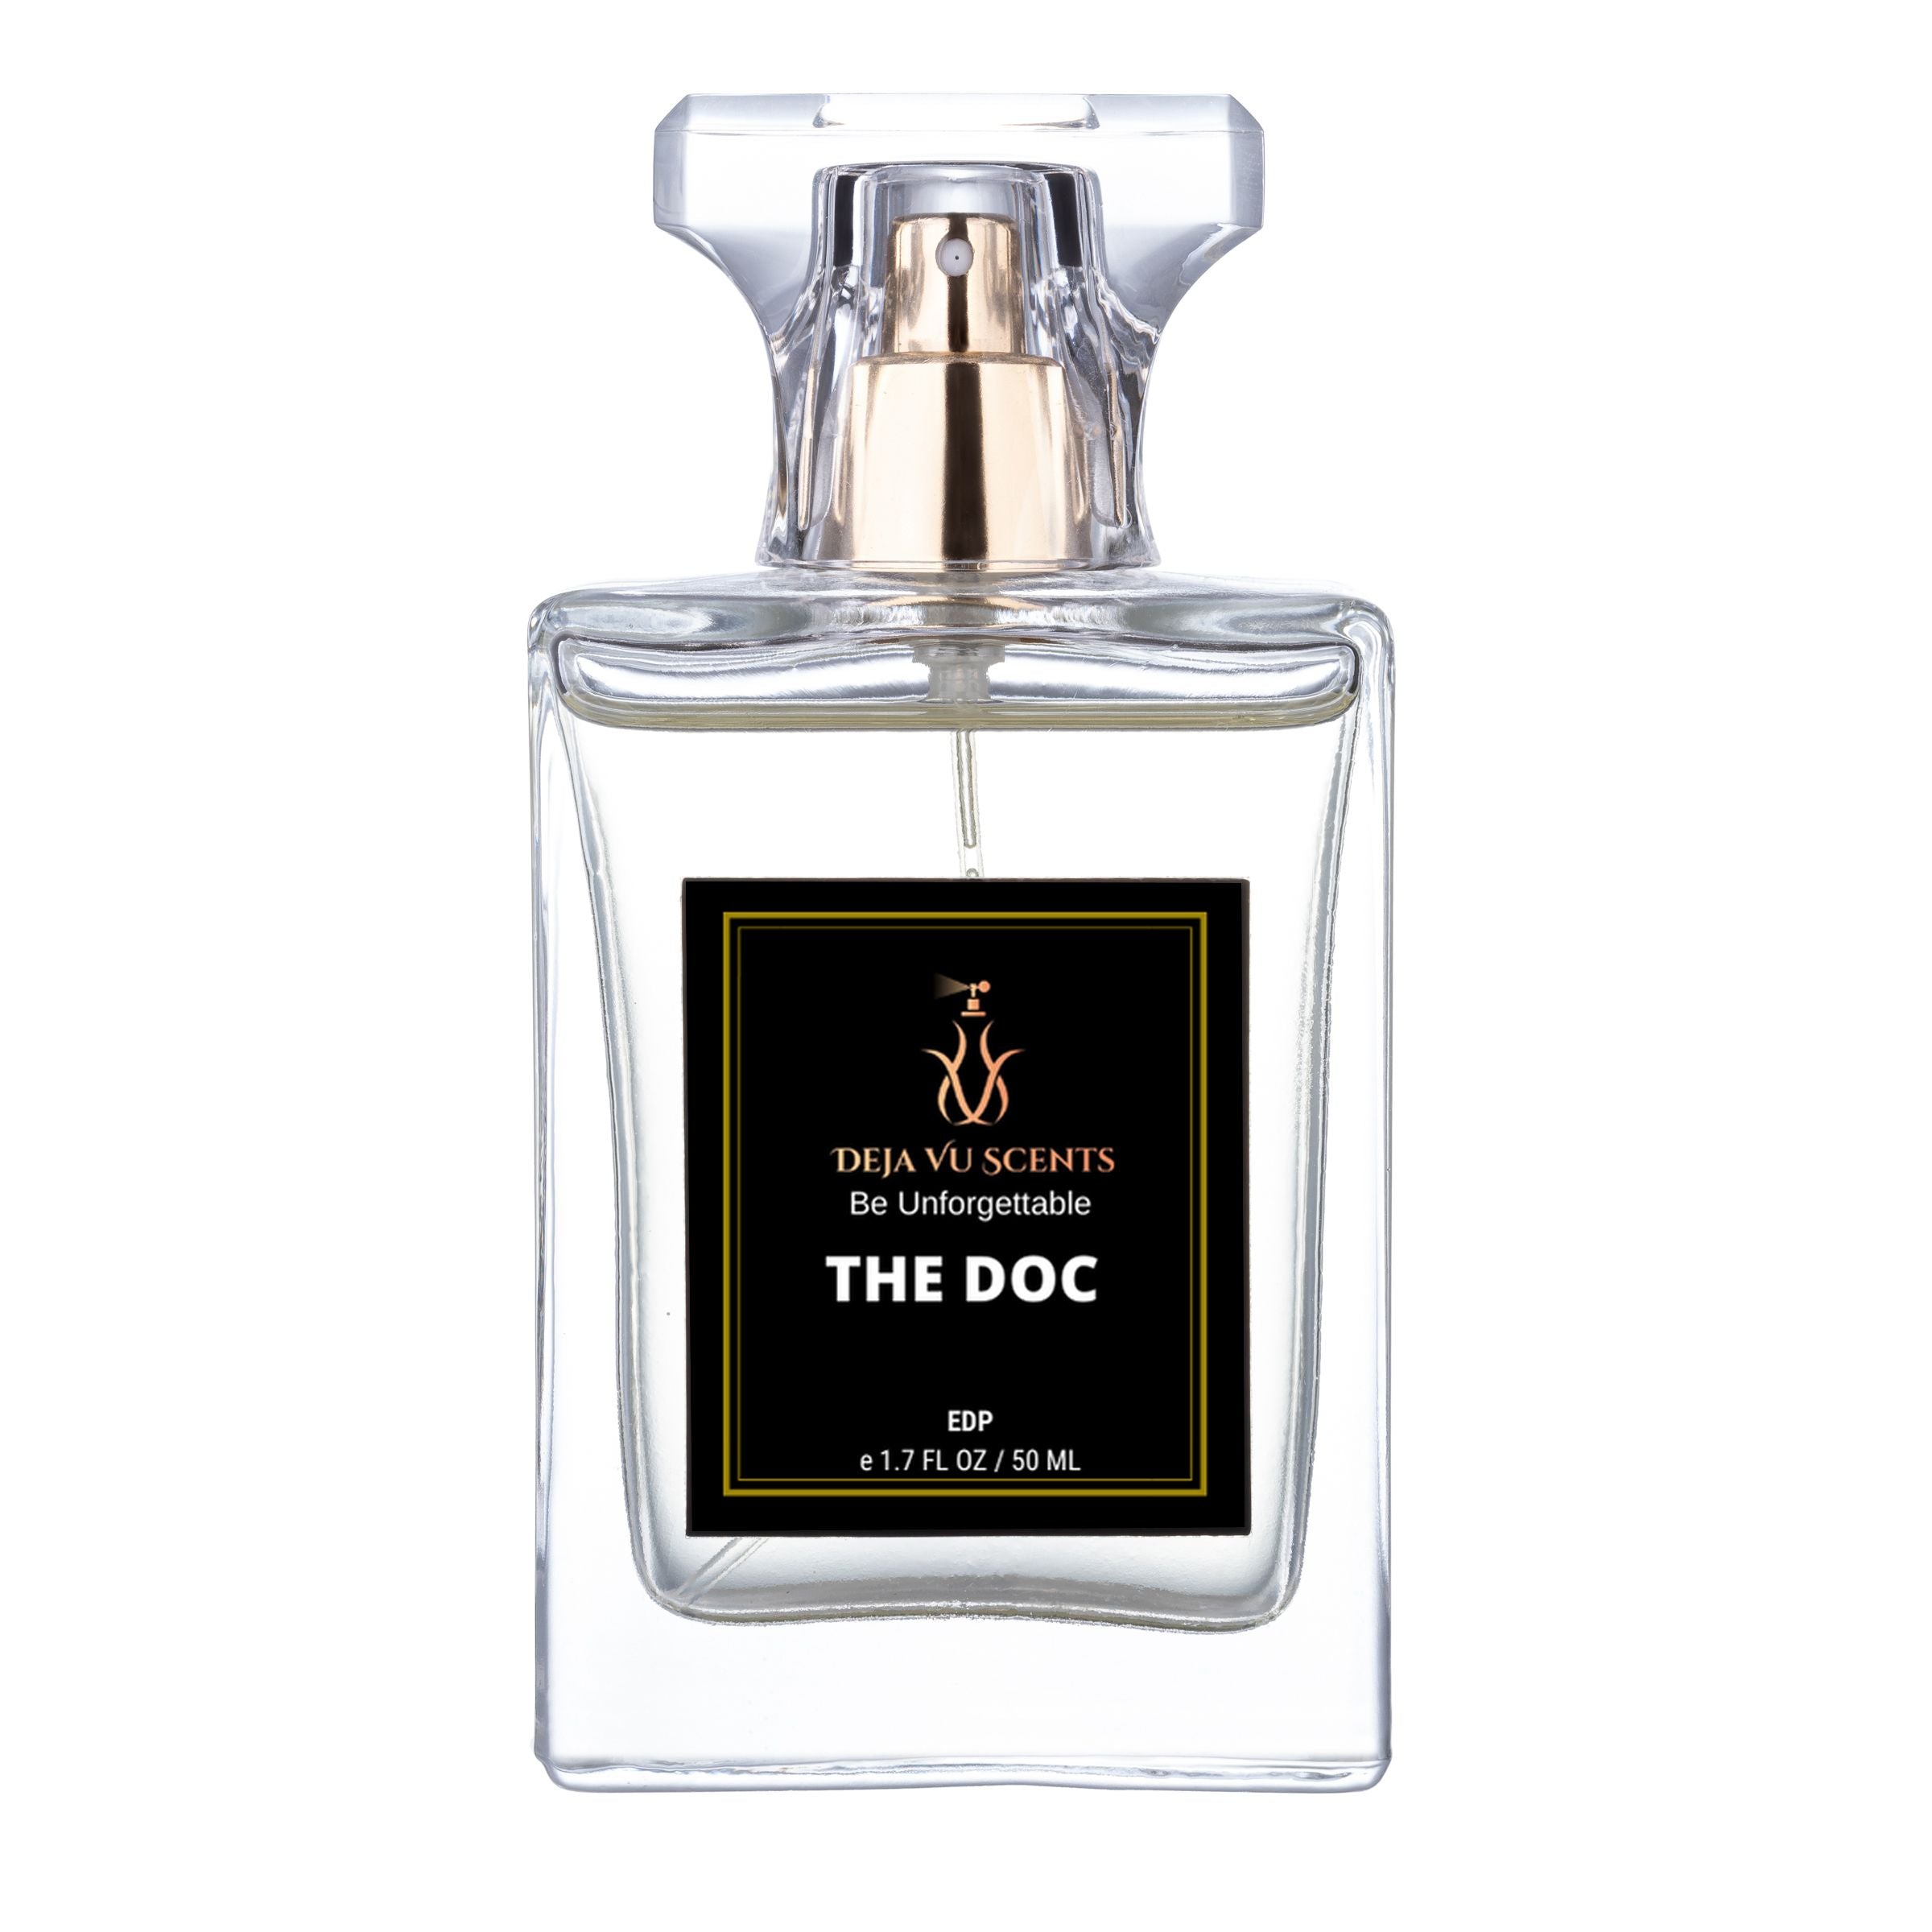 LOUIS VUITTON Les Sables Roses perfume review - LV fragrance